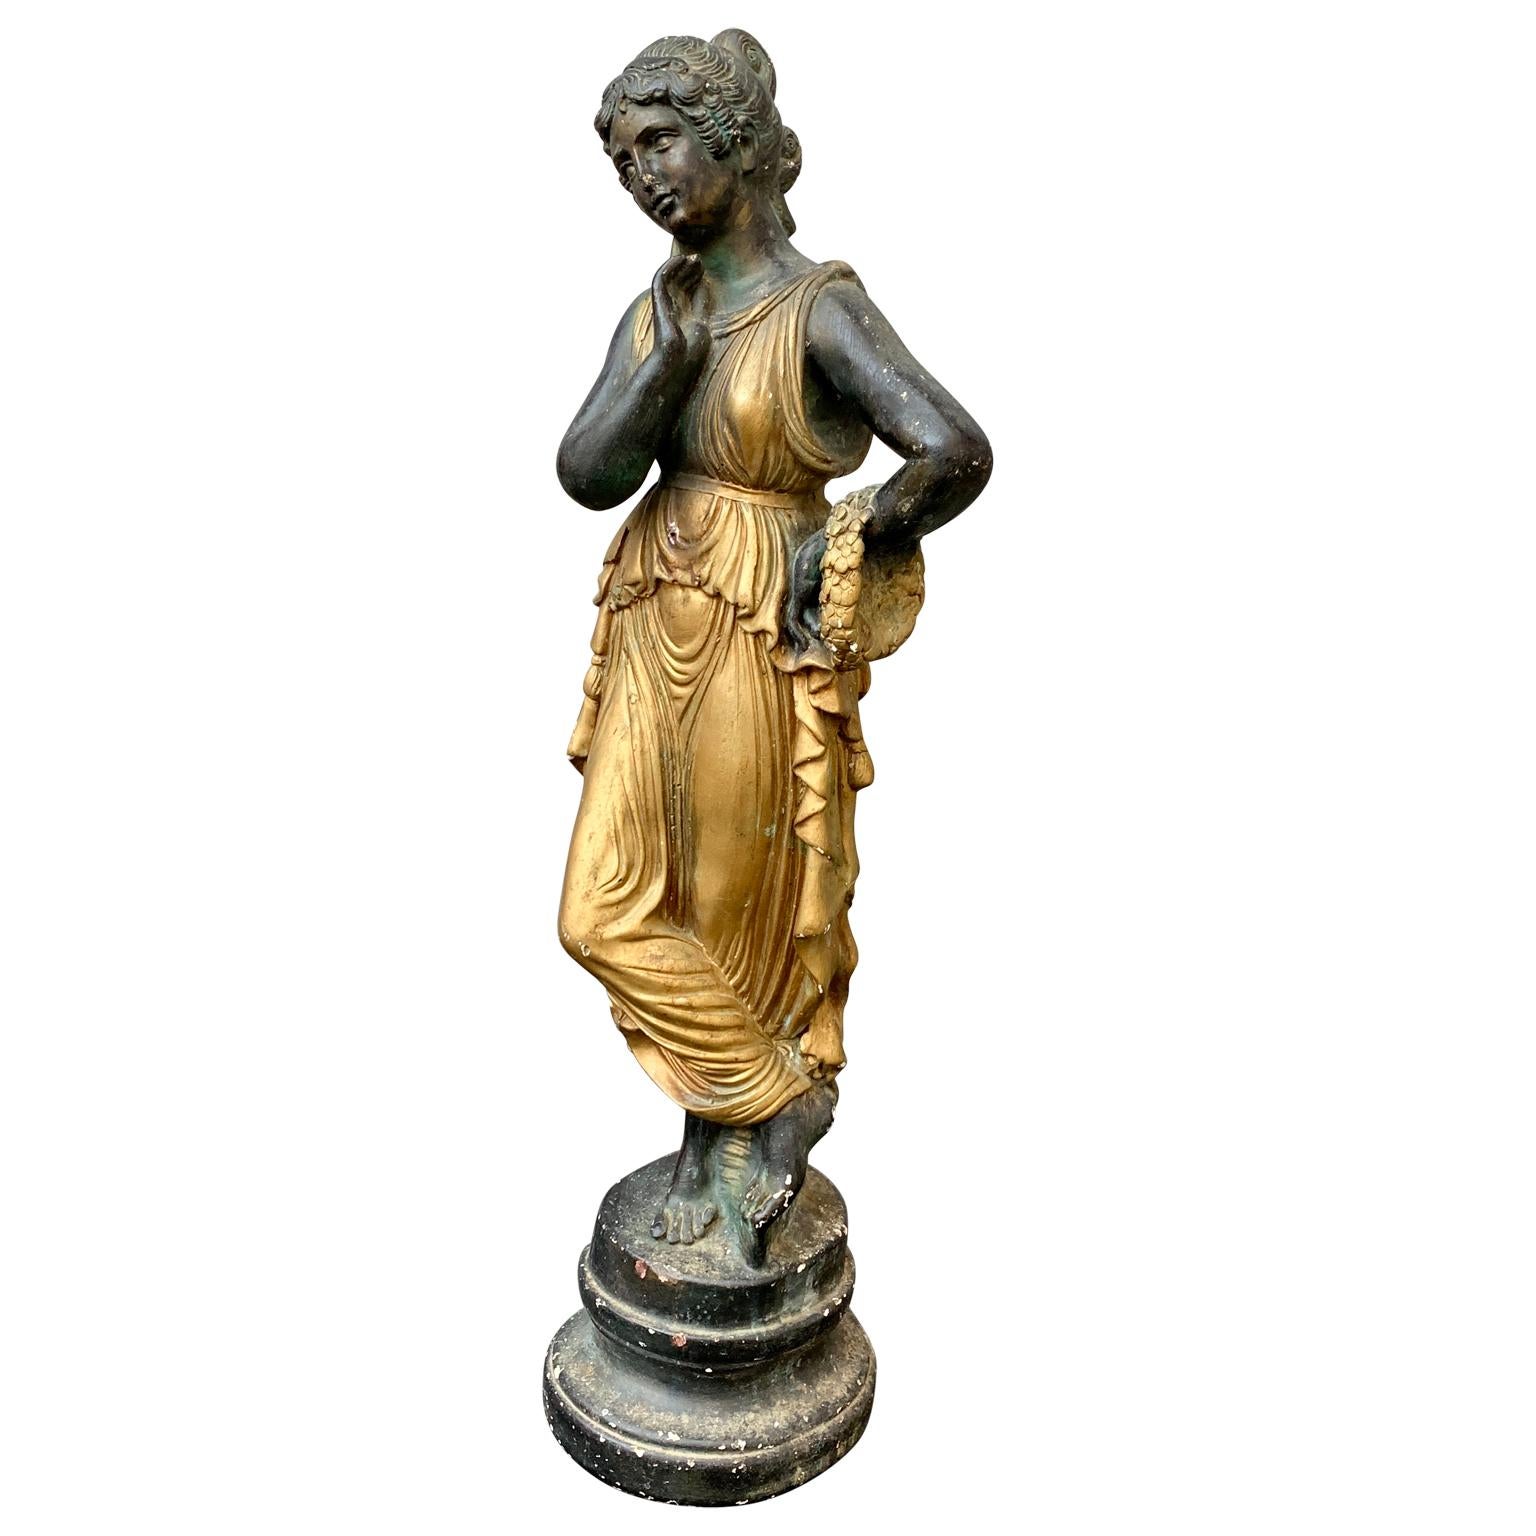 Sculpture italienne originale en plâtre peint représentant un jeune  Femme romaine portant une belle robe dorée et une couronne de fleurs. Cette dame souriante bien sculptée pourrait être ce qu'on appelle un souvenir de 